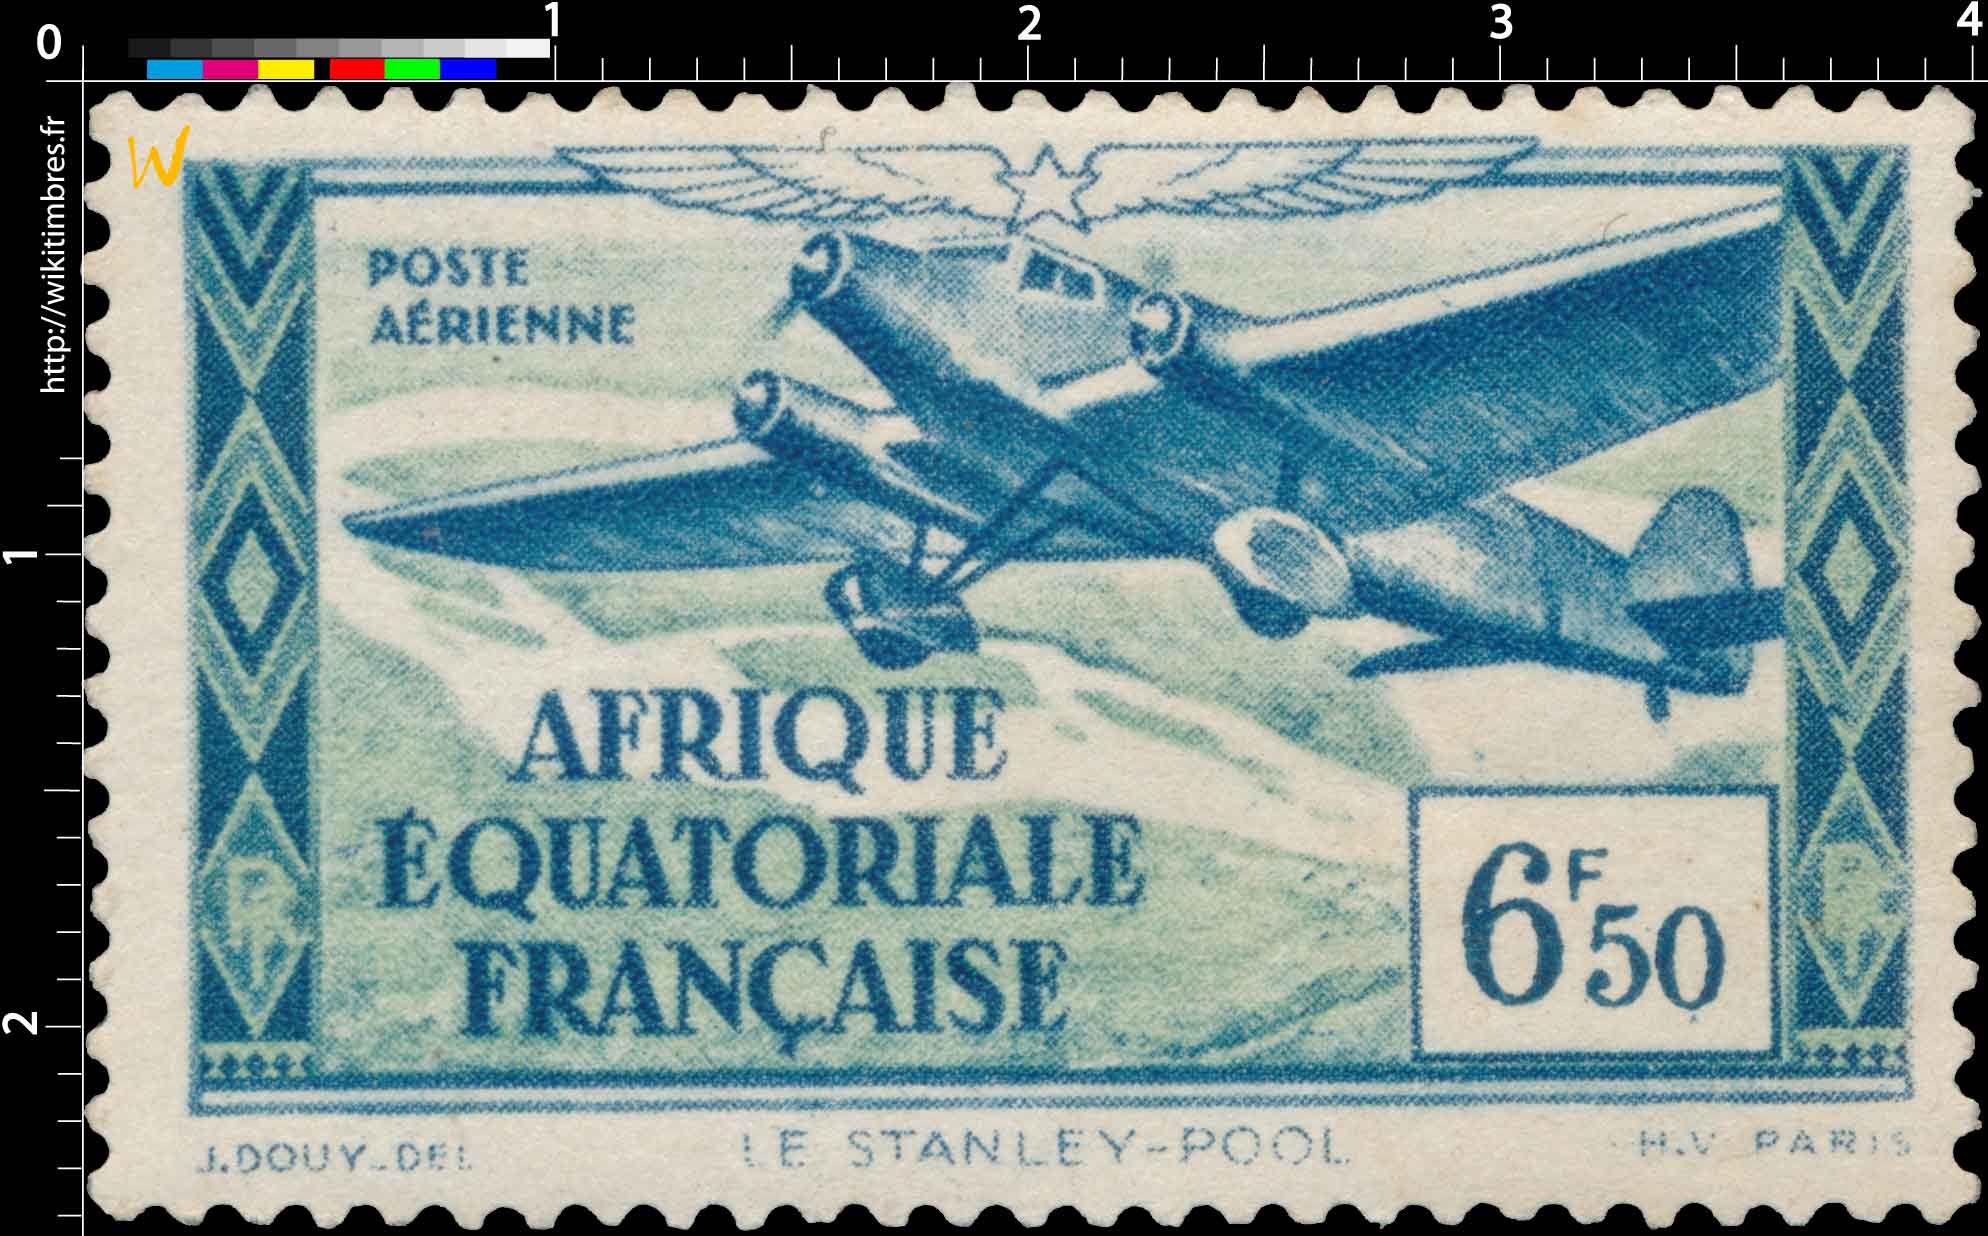 Poste aérienne Le Stanley-Pool Afrique Équatoriale Française